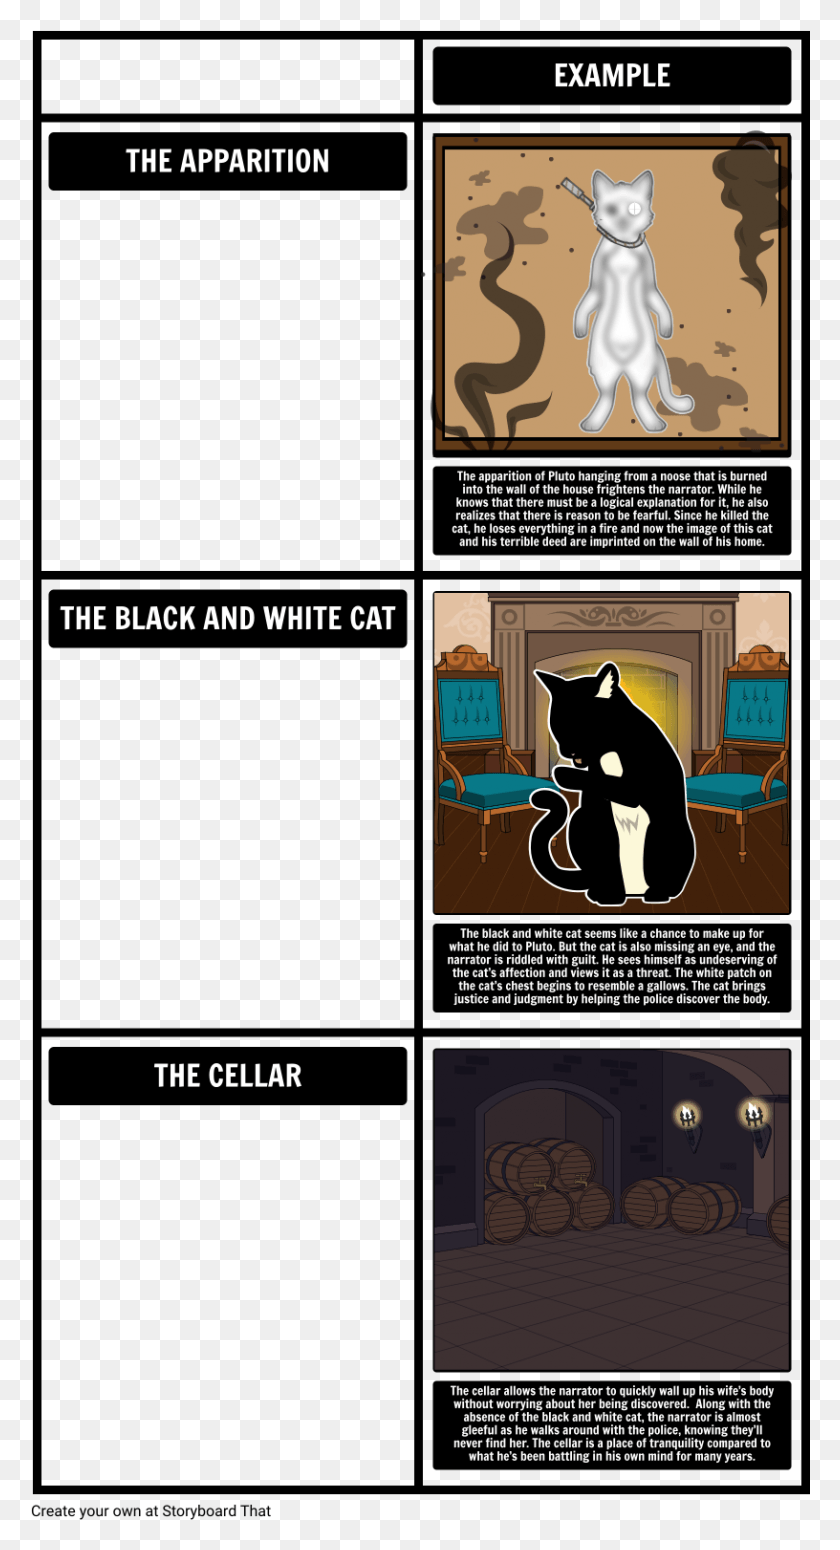 816x1559 Símbolos Y Motivos En El Gato Negro Gato Negro Edgar Allan Poe Símbolos, Gato, Mascota, Mamífero Hd Png